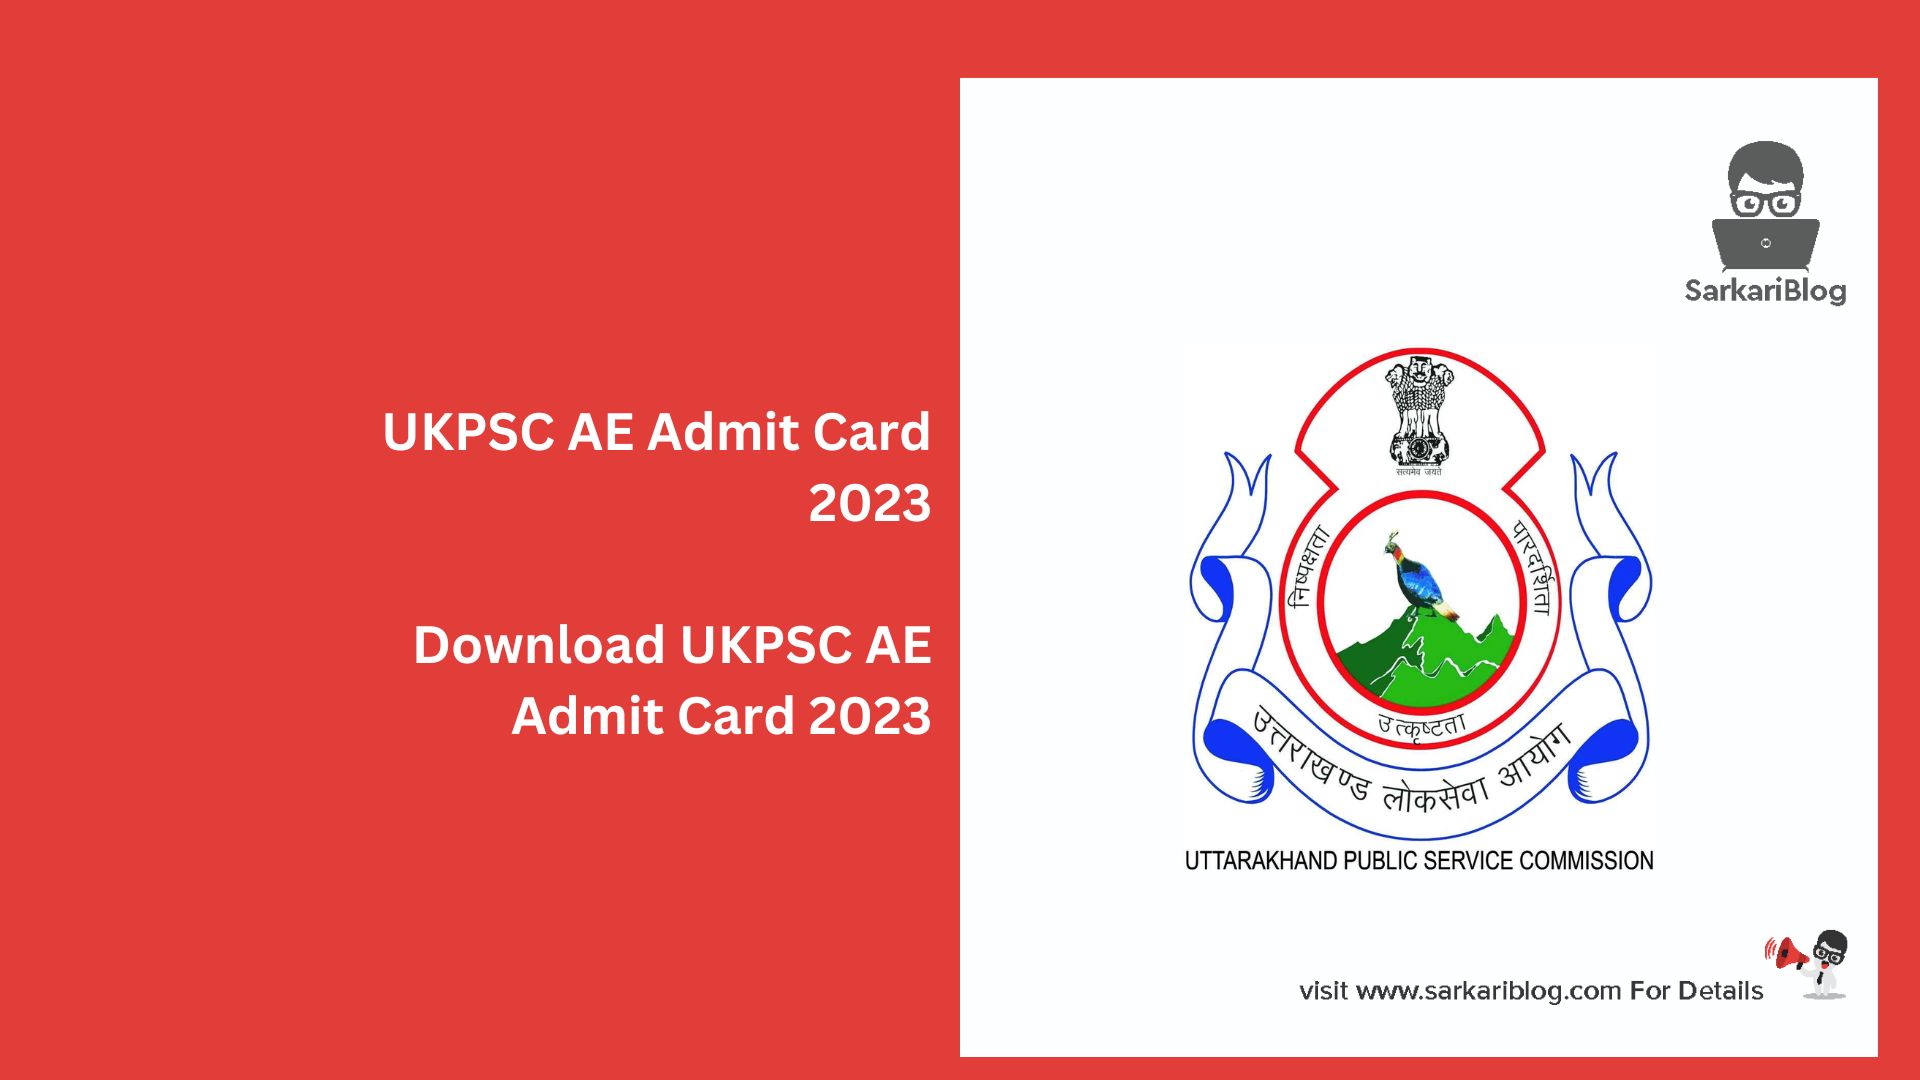 UKPSC AE Admit Card 2023